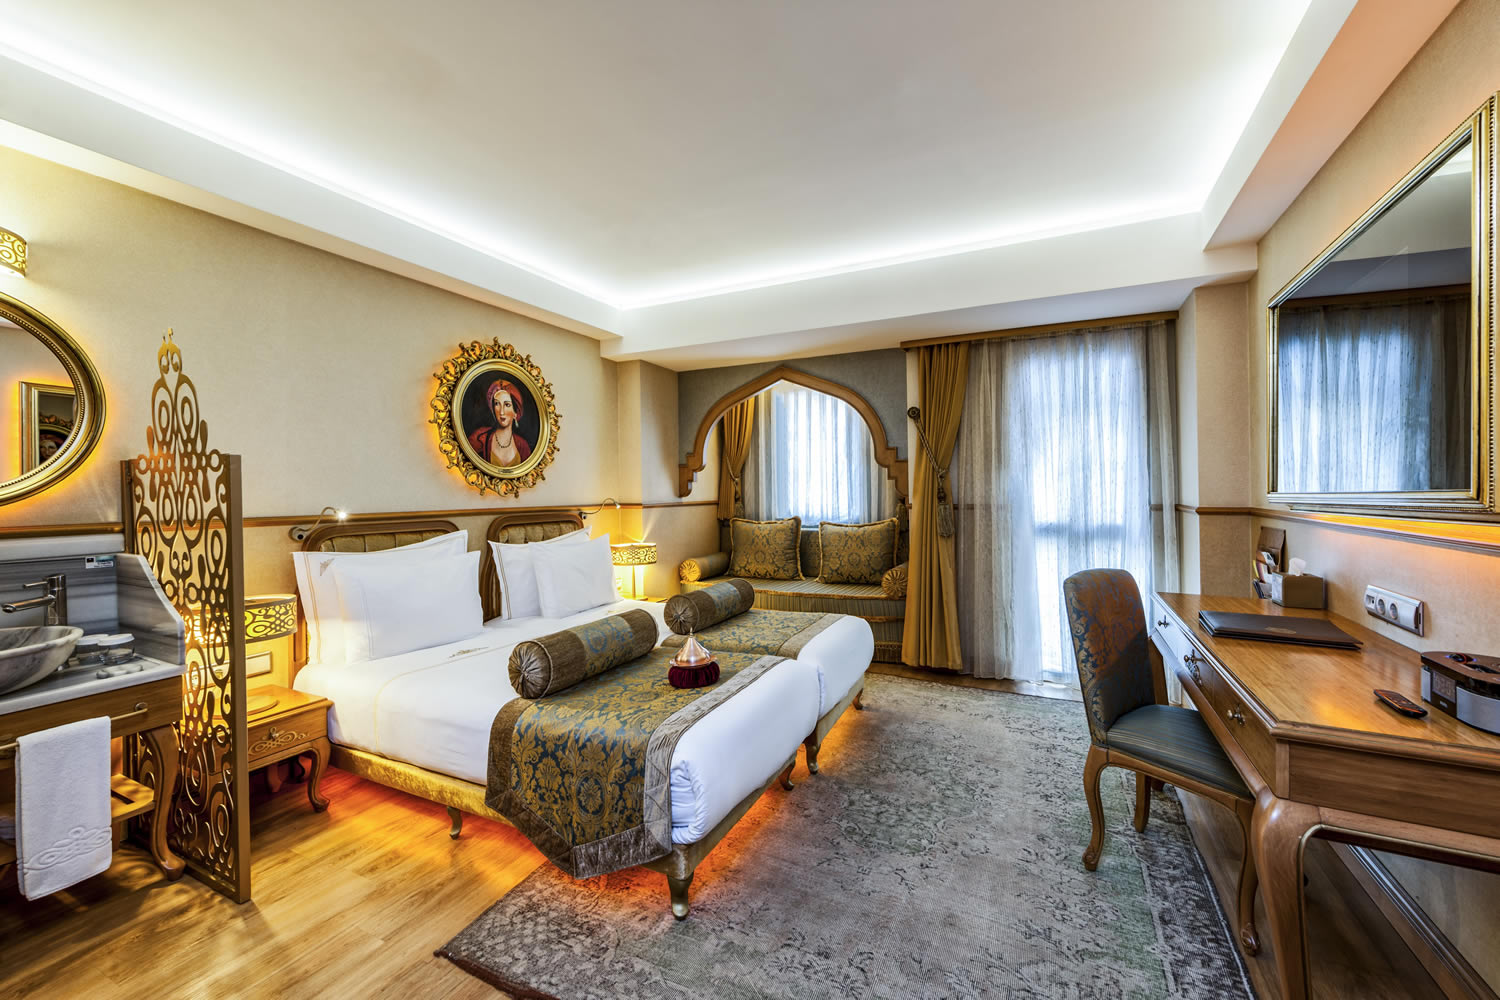 Лучшие недорогие отели турции для отдыха. Отель Султания в Стамбуле. Султания отель Султанахмет. Отель Султанахмет в Стамбуле 5 звезд. Sultania Hotel 5.